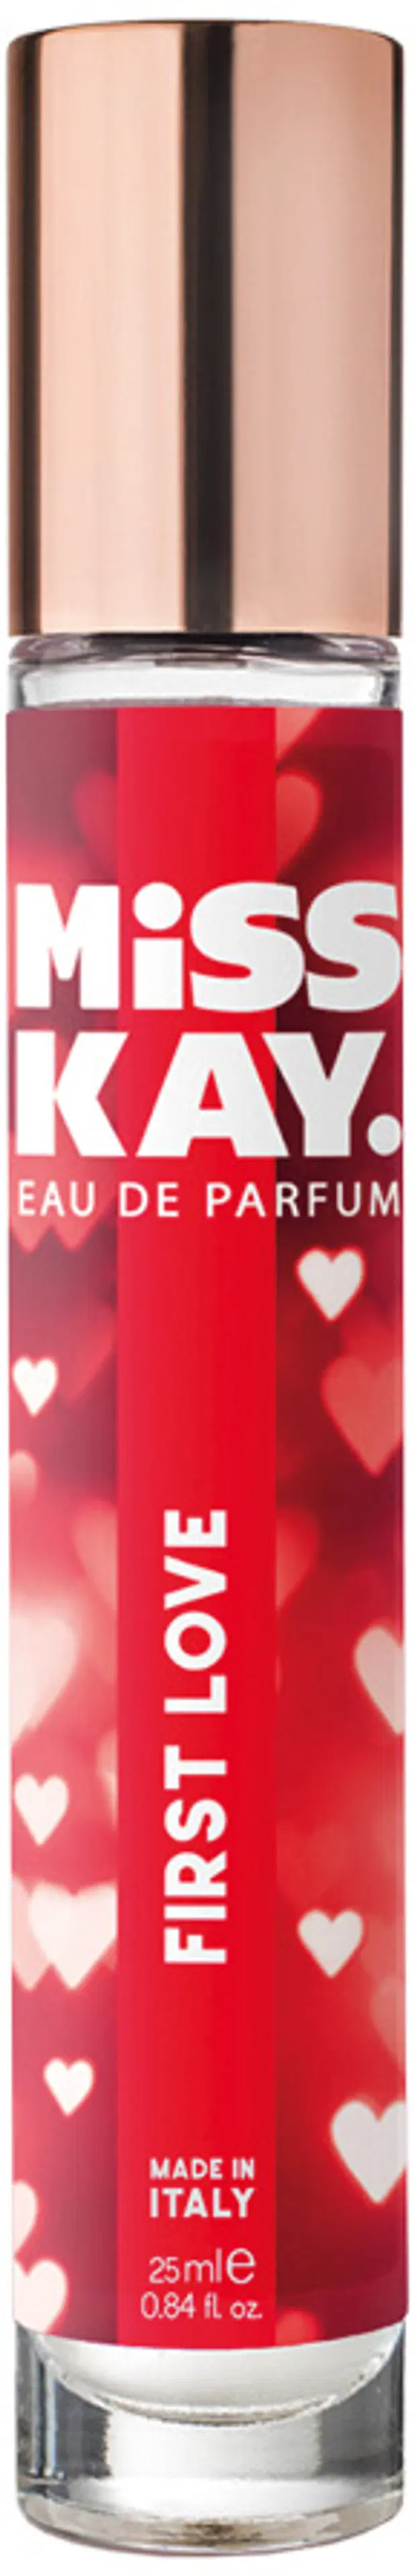 Miss Kay First Love EdP tuoksu 24,5 ml